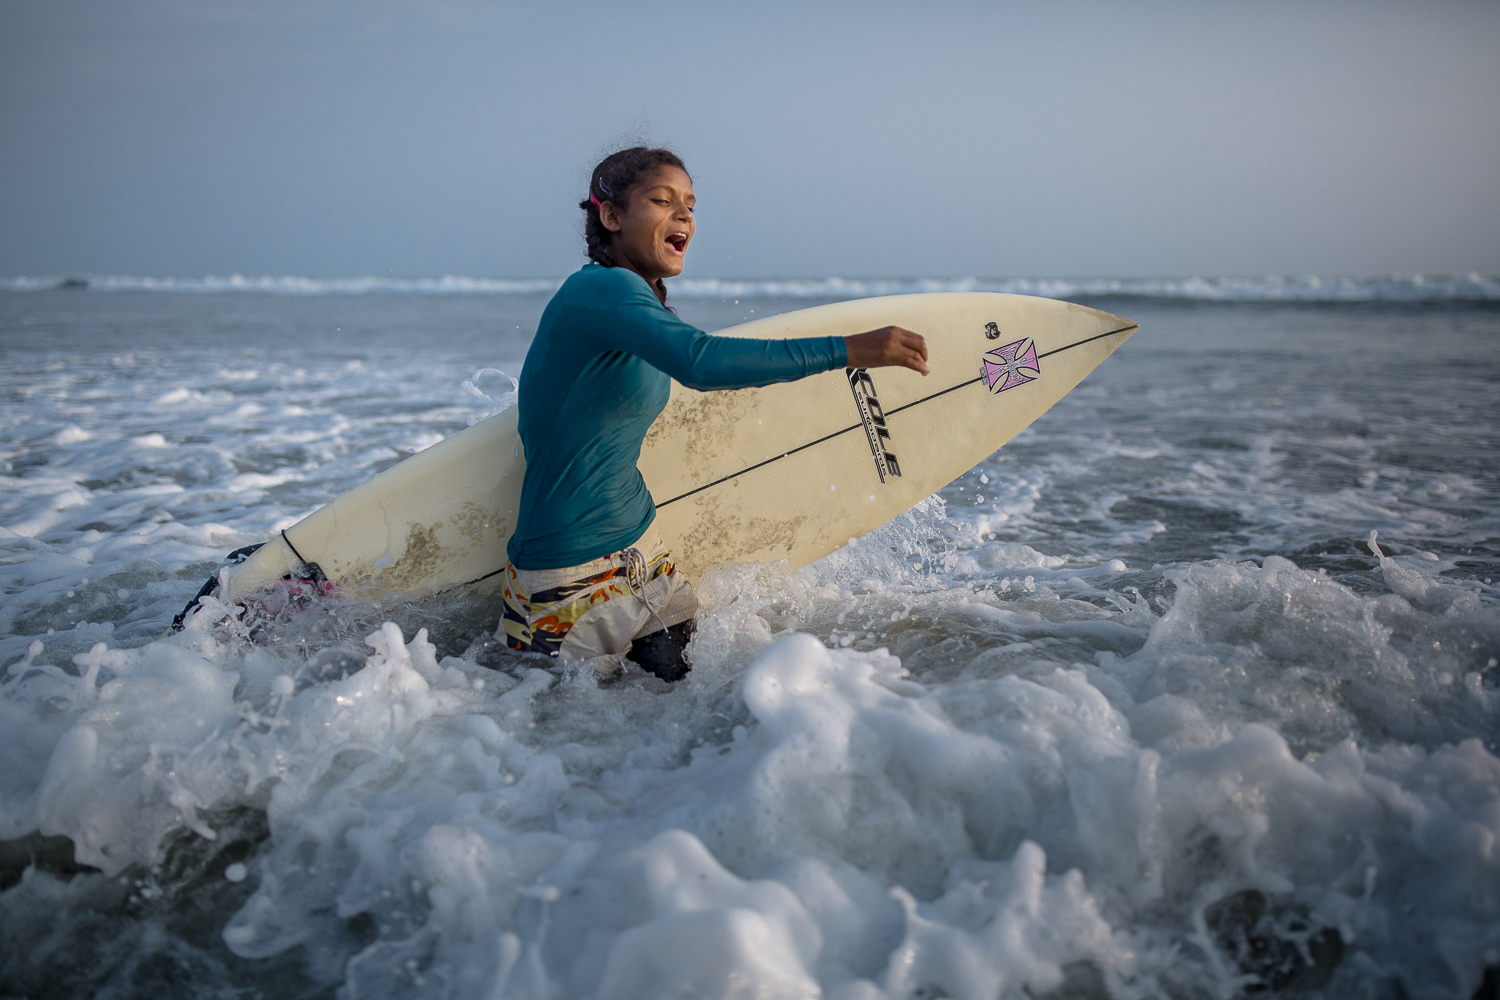  Female surfing activist, Cox Bazar / Bangladesh -2017 